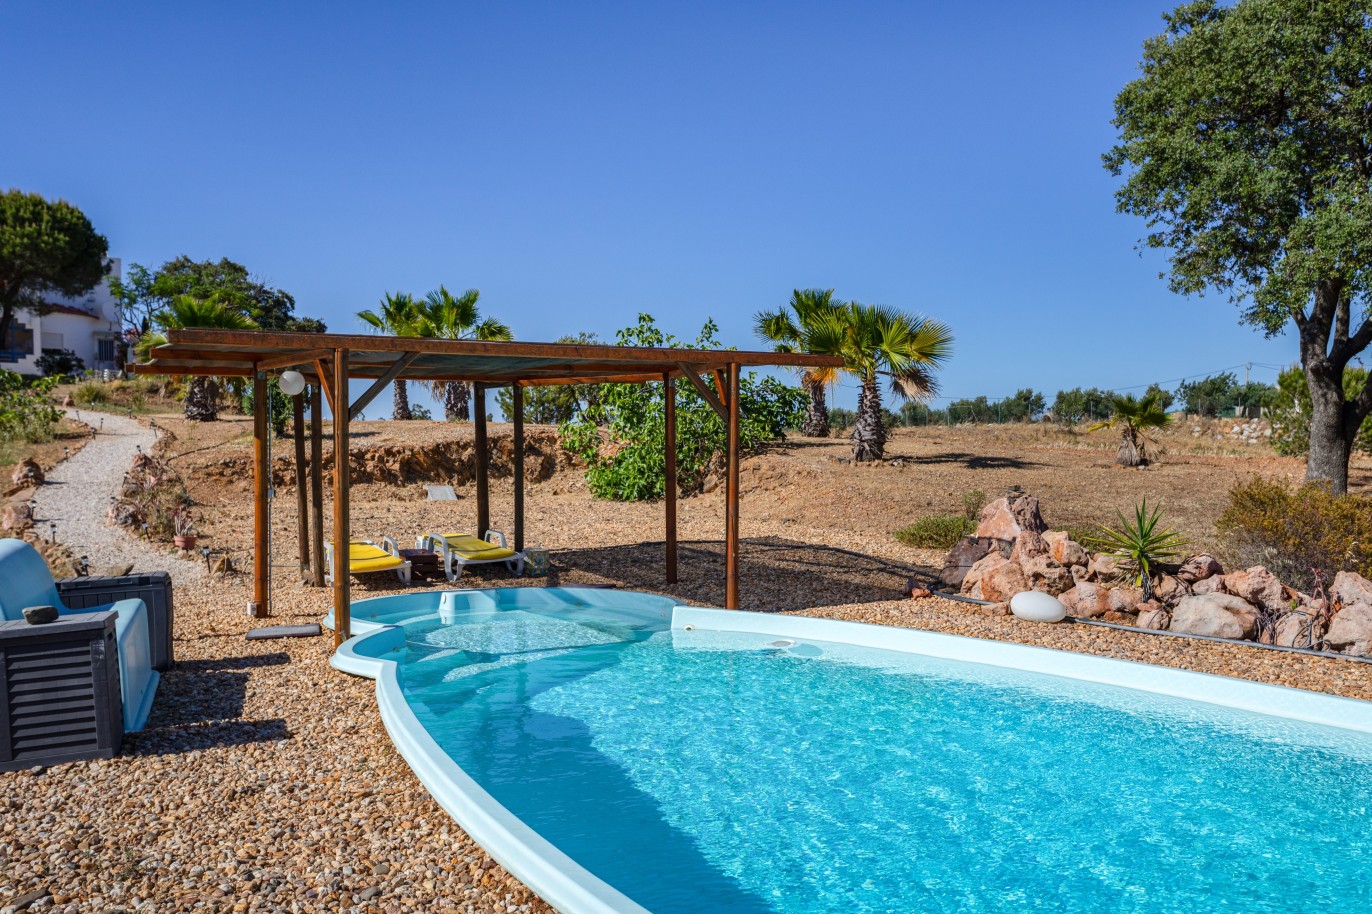 Moradia V6 com piscina, para venda em Vila Nova de Cacela, Algarve_226532